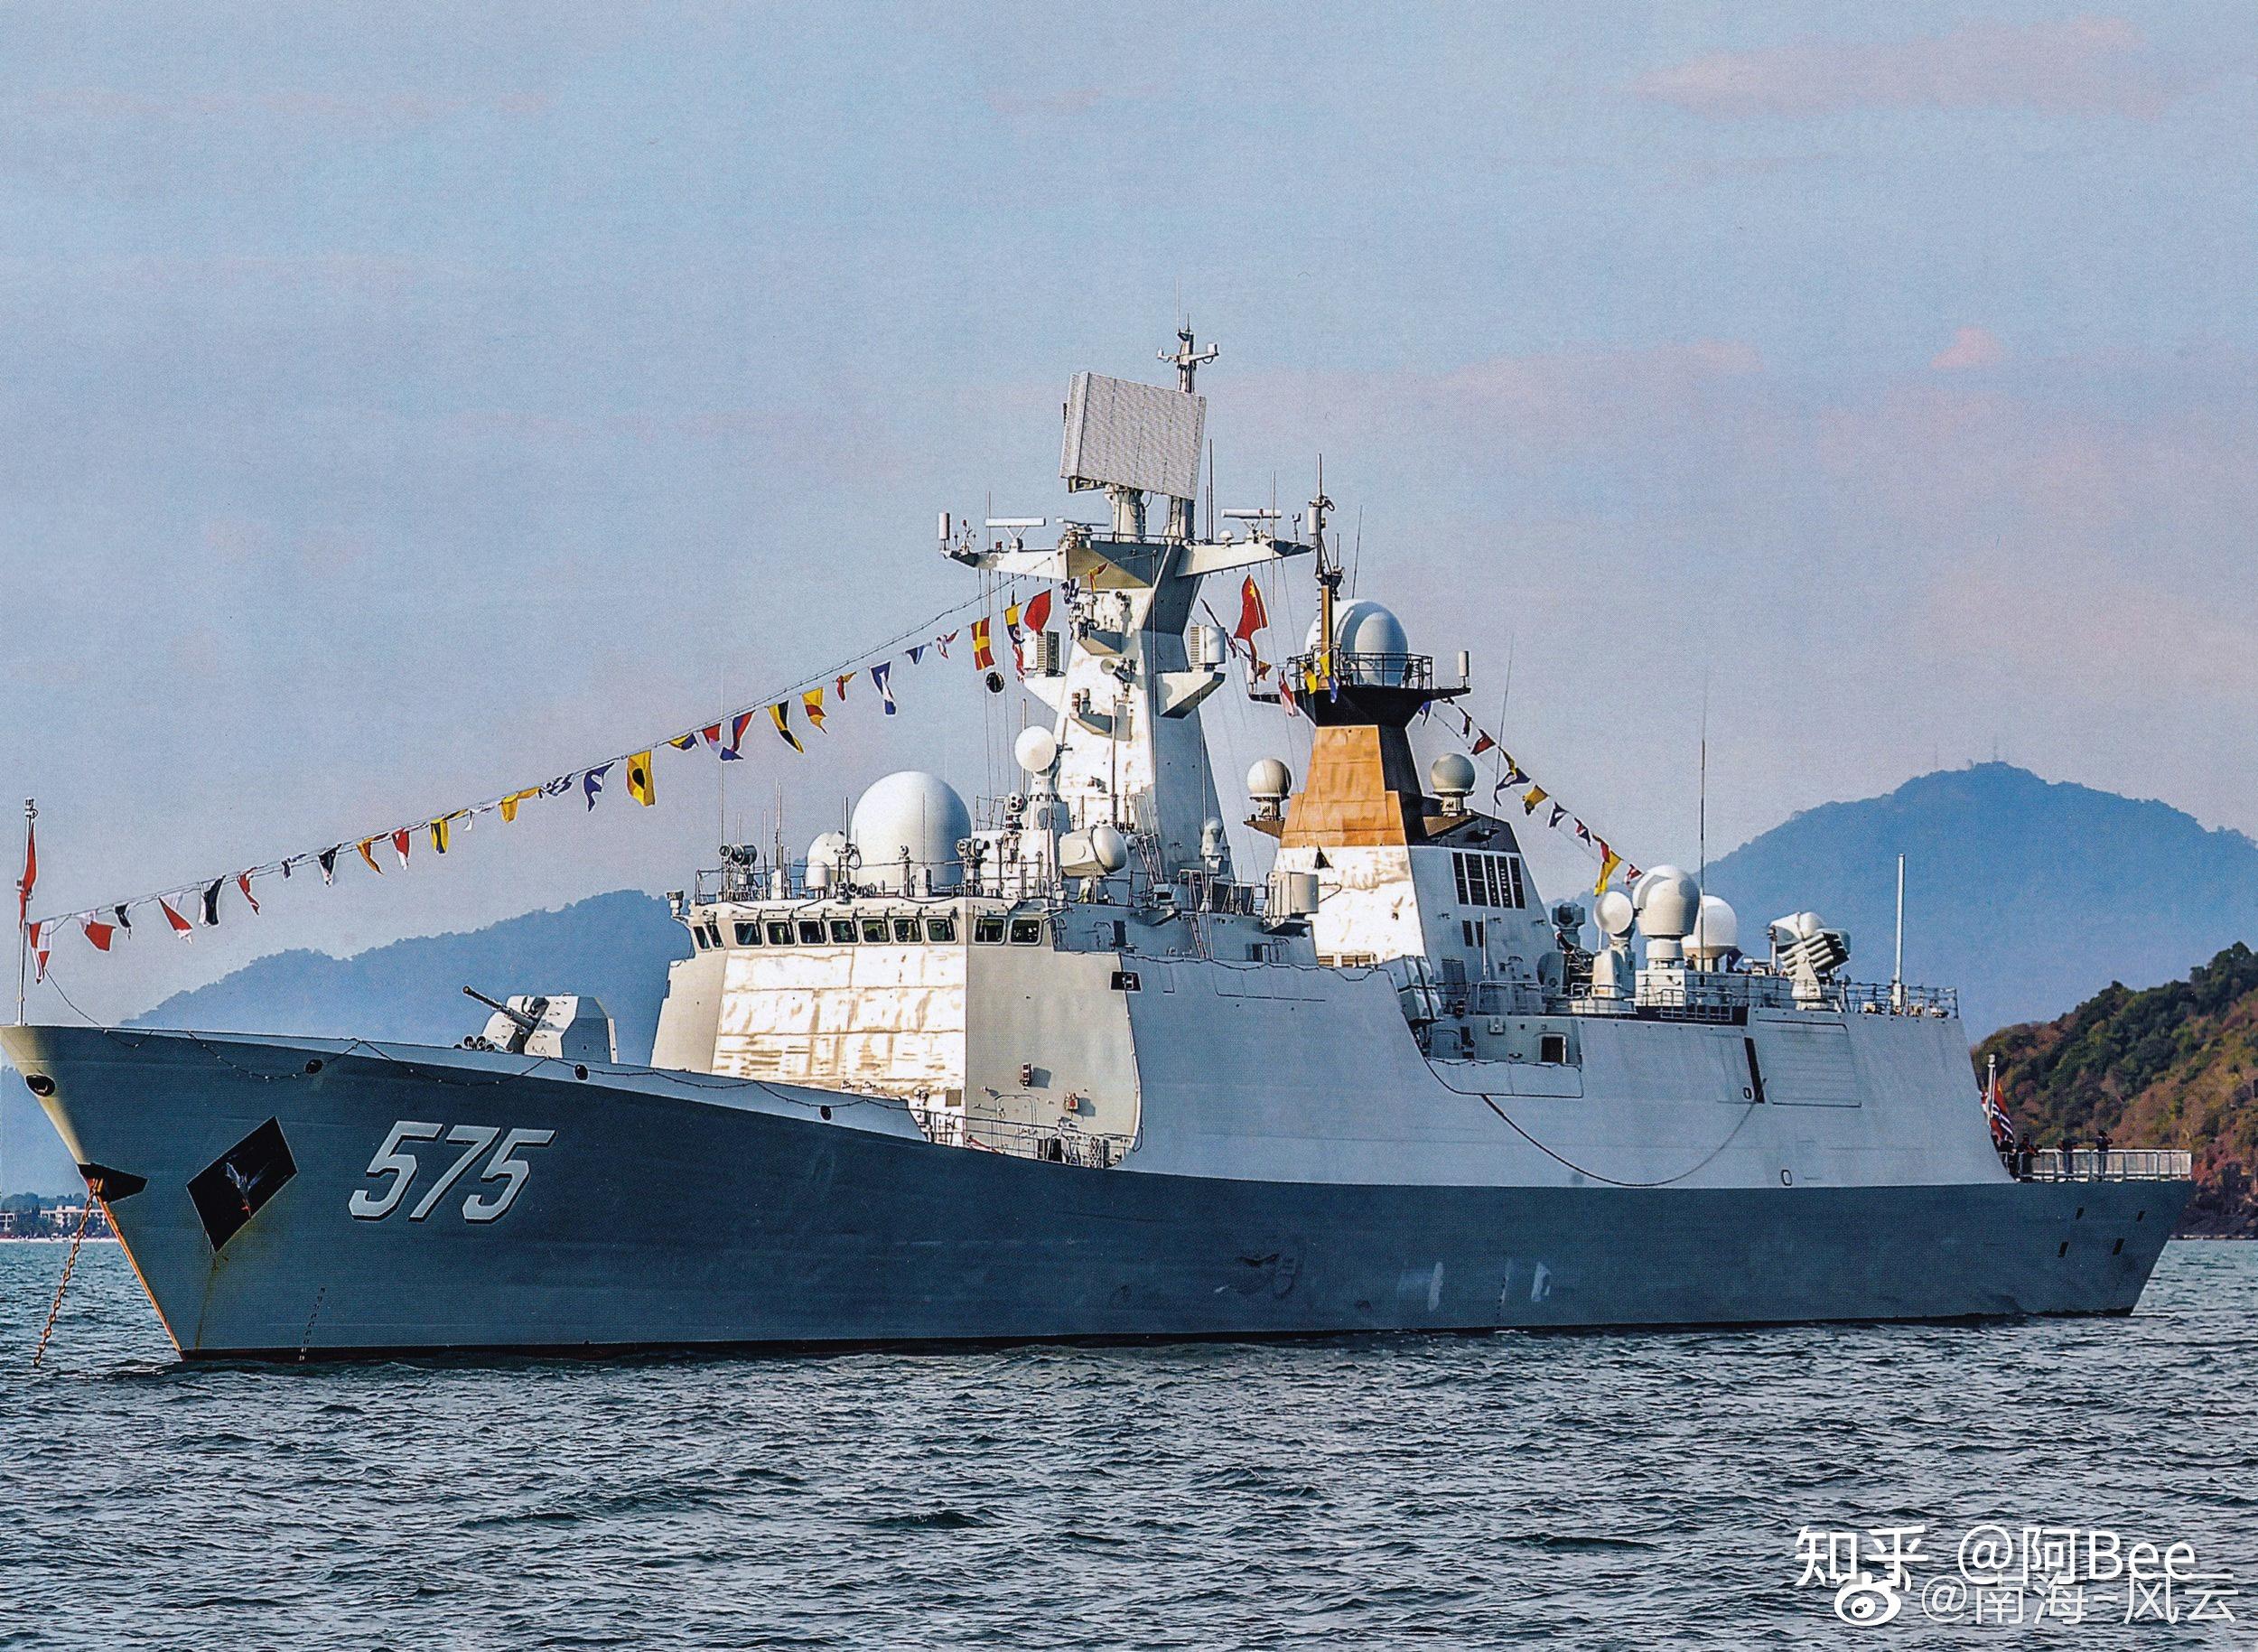 中国海军054/054a型护卫舰一览